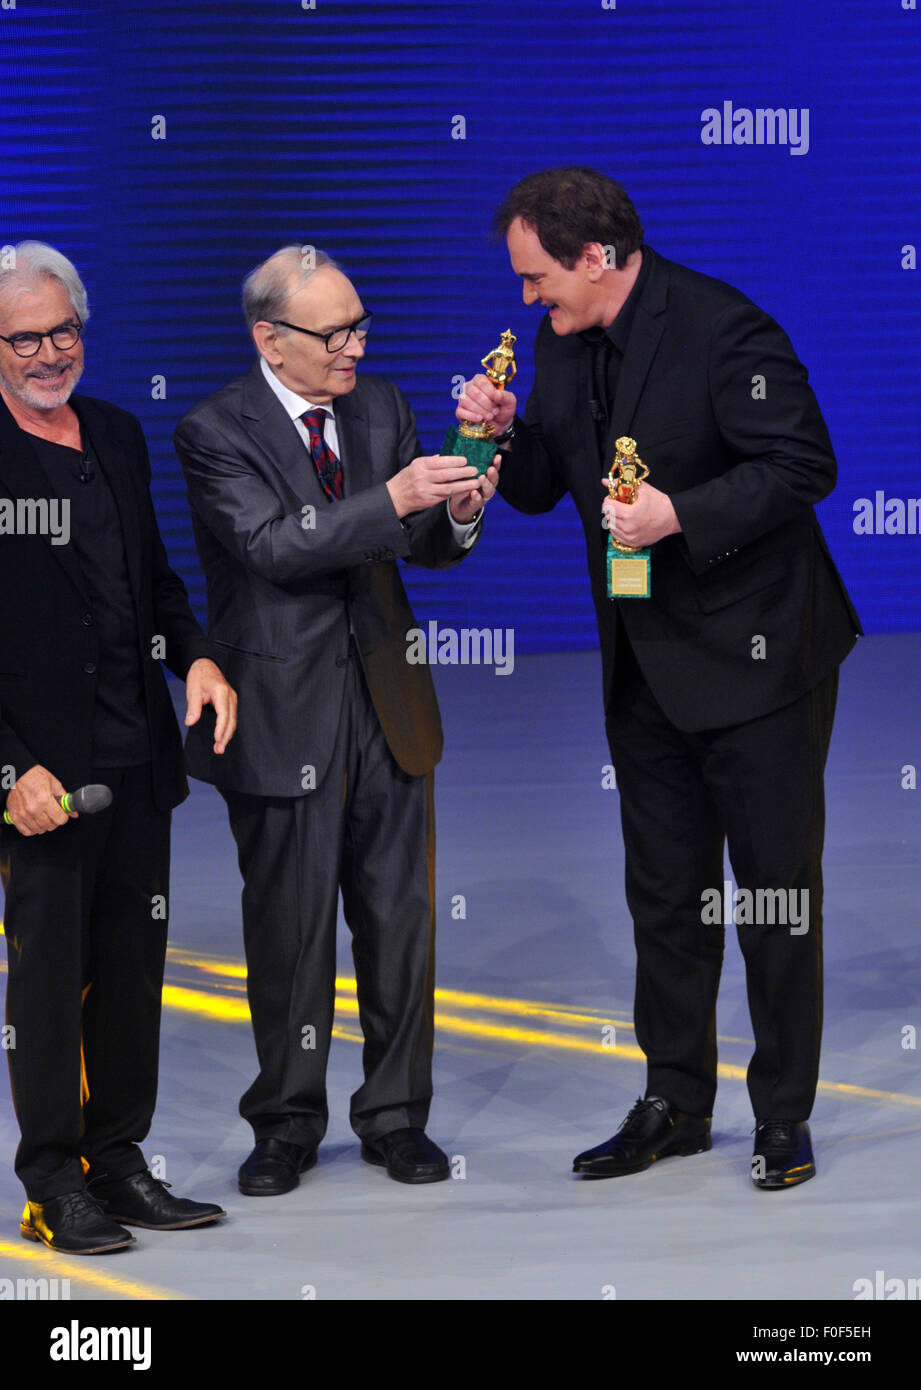 Quentin Tarantino attends the 2015 David di Donatello Awards  Featuring: Quentin Tarantino, Ennio Moricone, Tullio Solenghi Where: Rome, Italy When: 12 Jun 2015 C Stock Photo